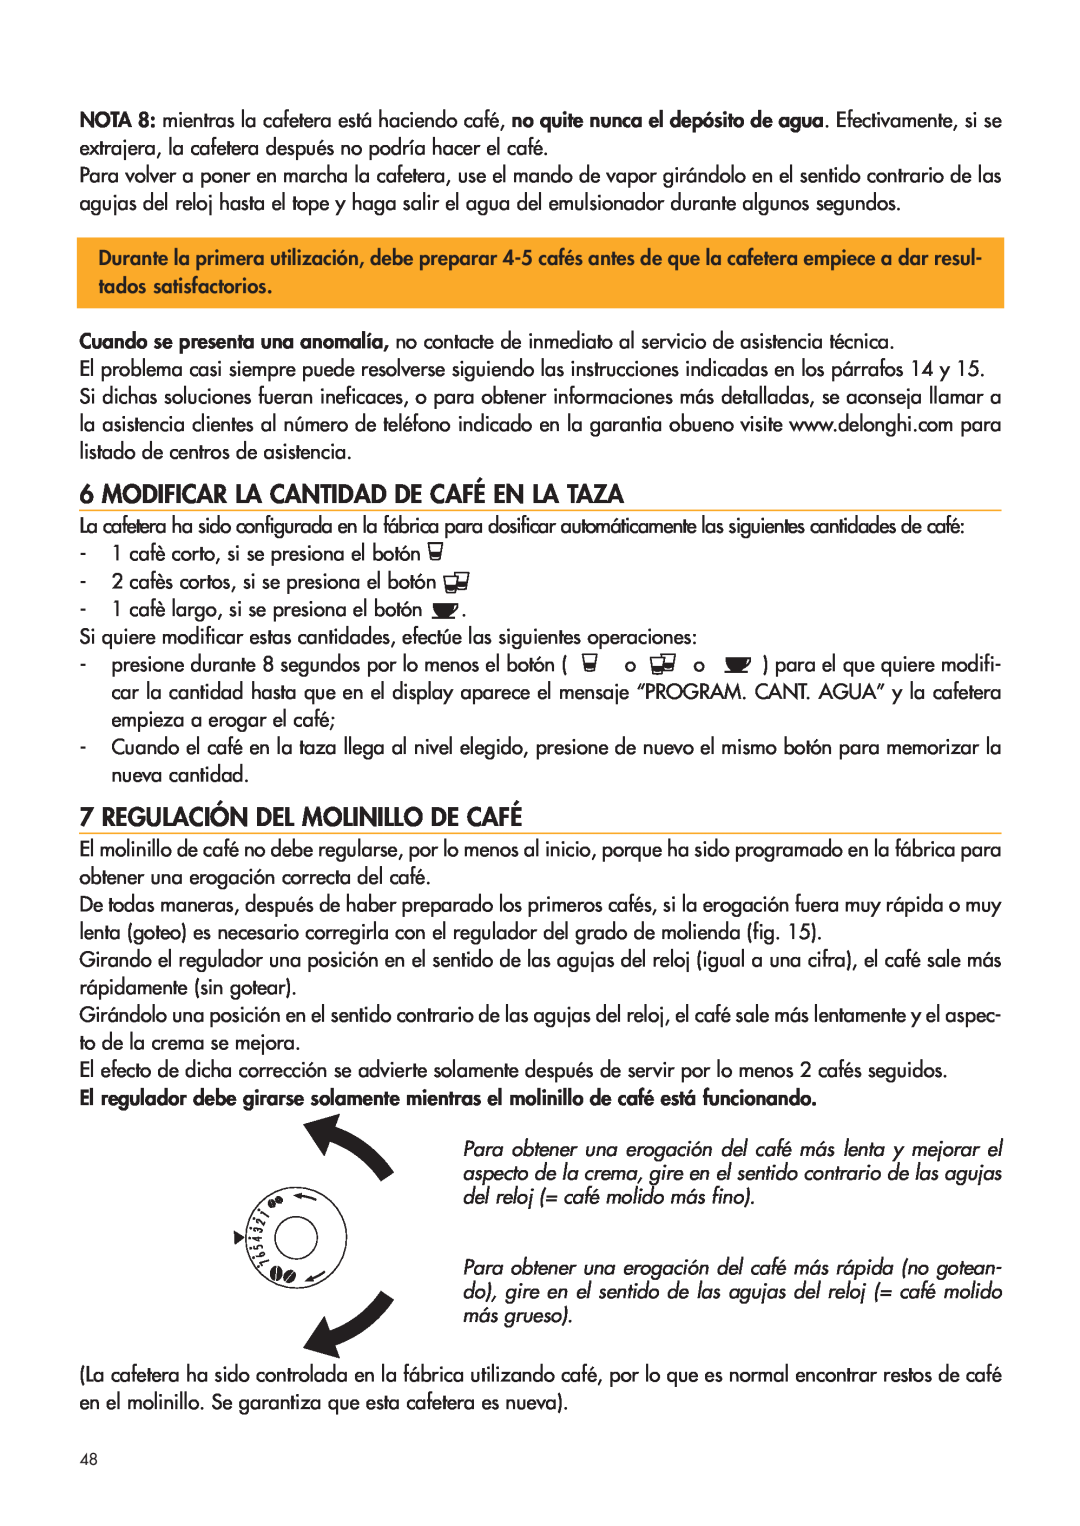 DeLonghi ESAM4400 manual Modificar La Cantidad De Café En La Taza, Regulación Del Molinillo De Café 